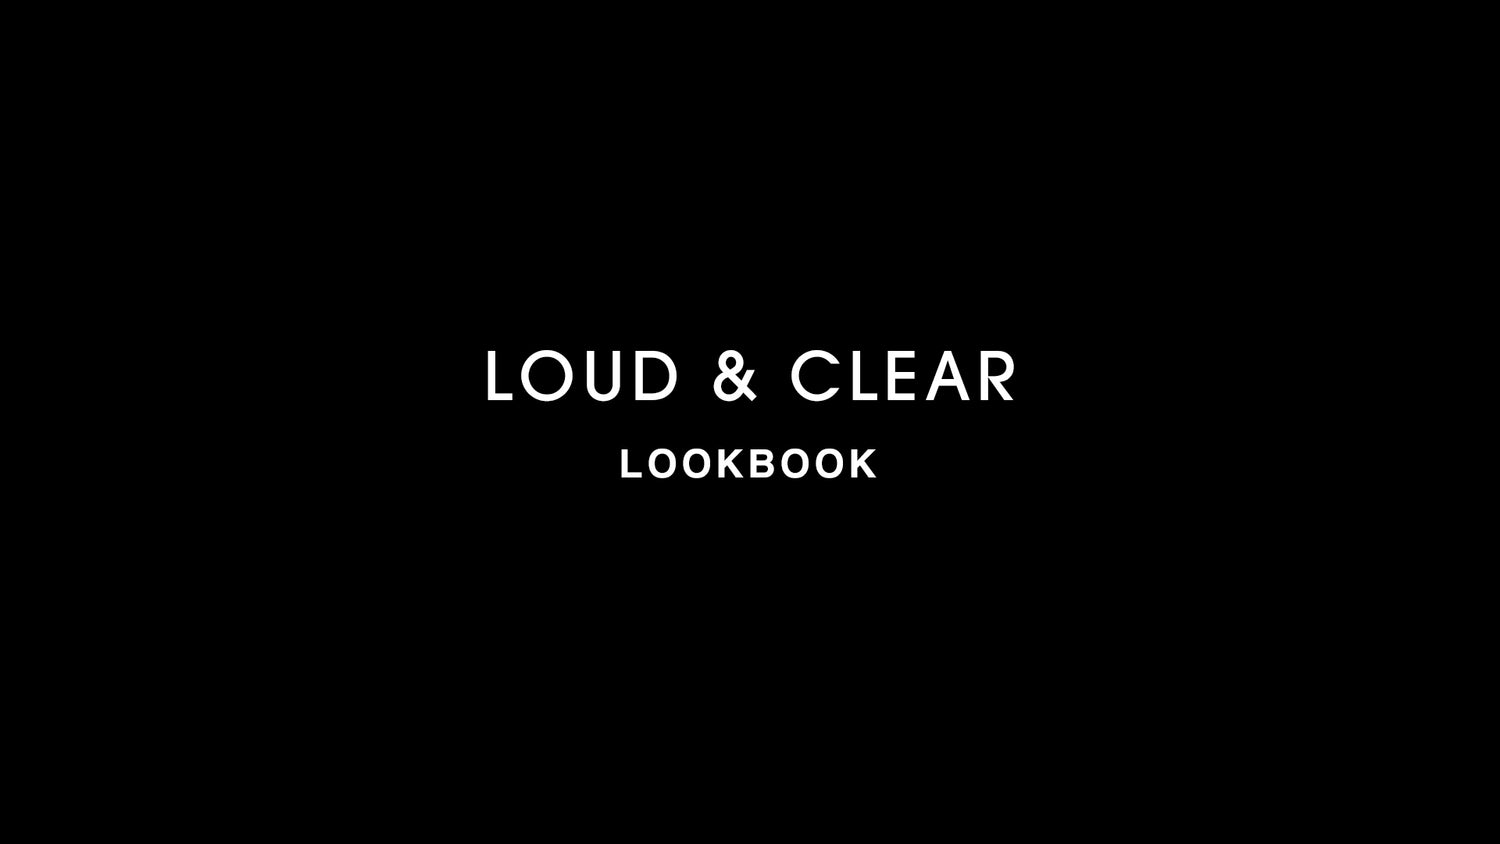 LOUD & CLEAR LOOKBOOK